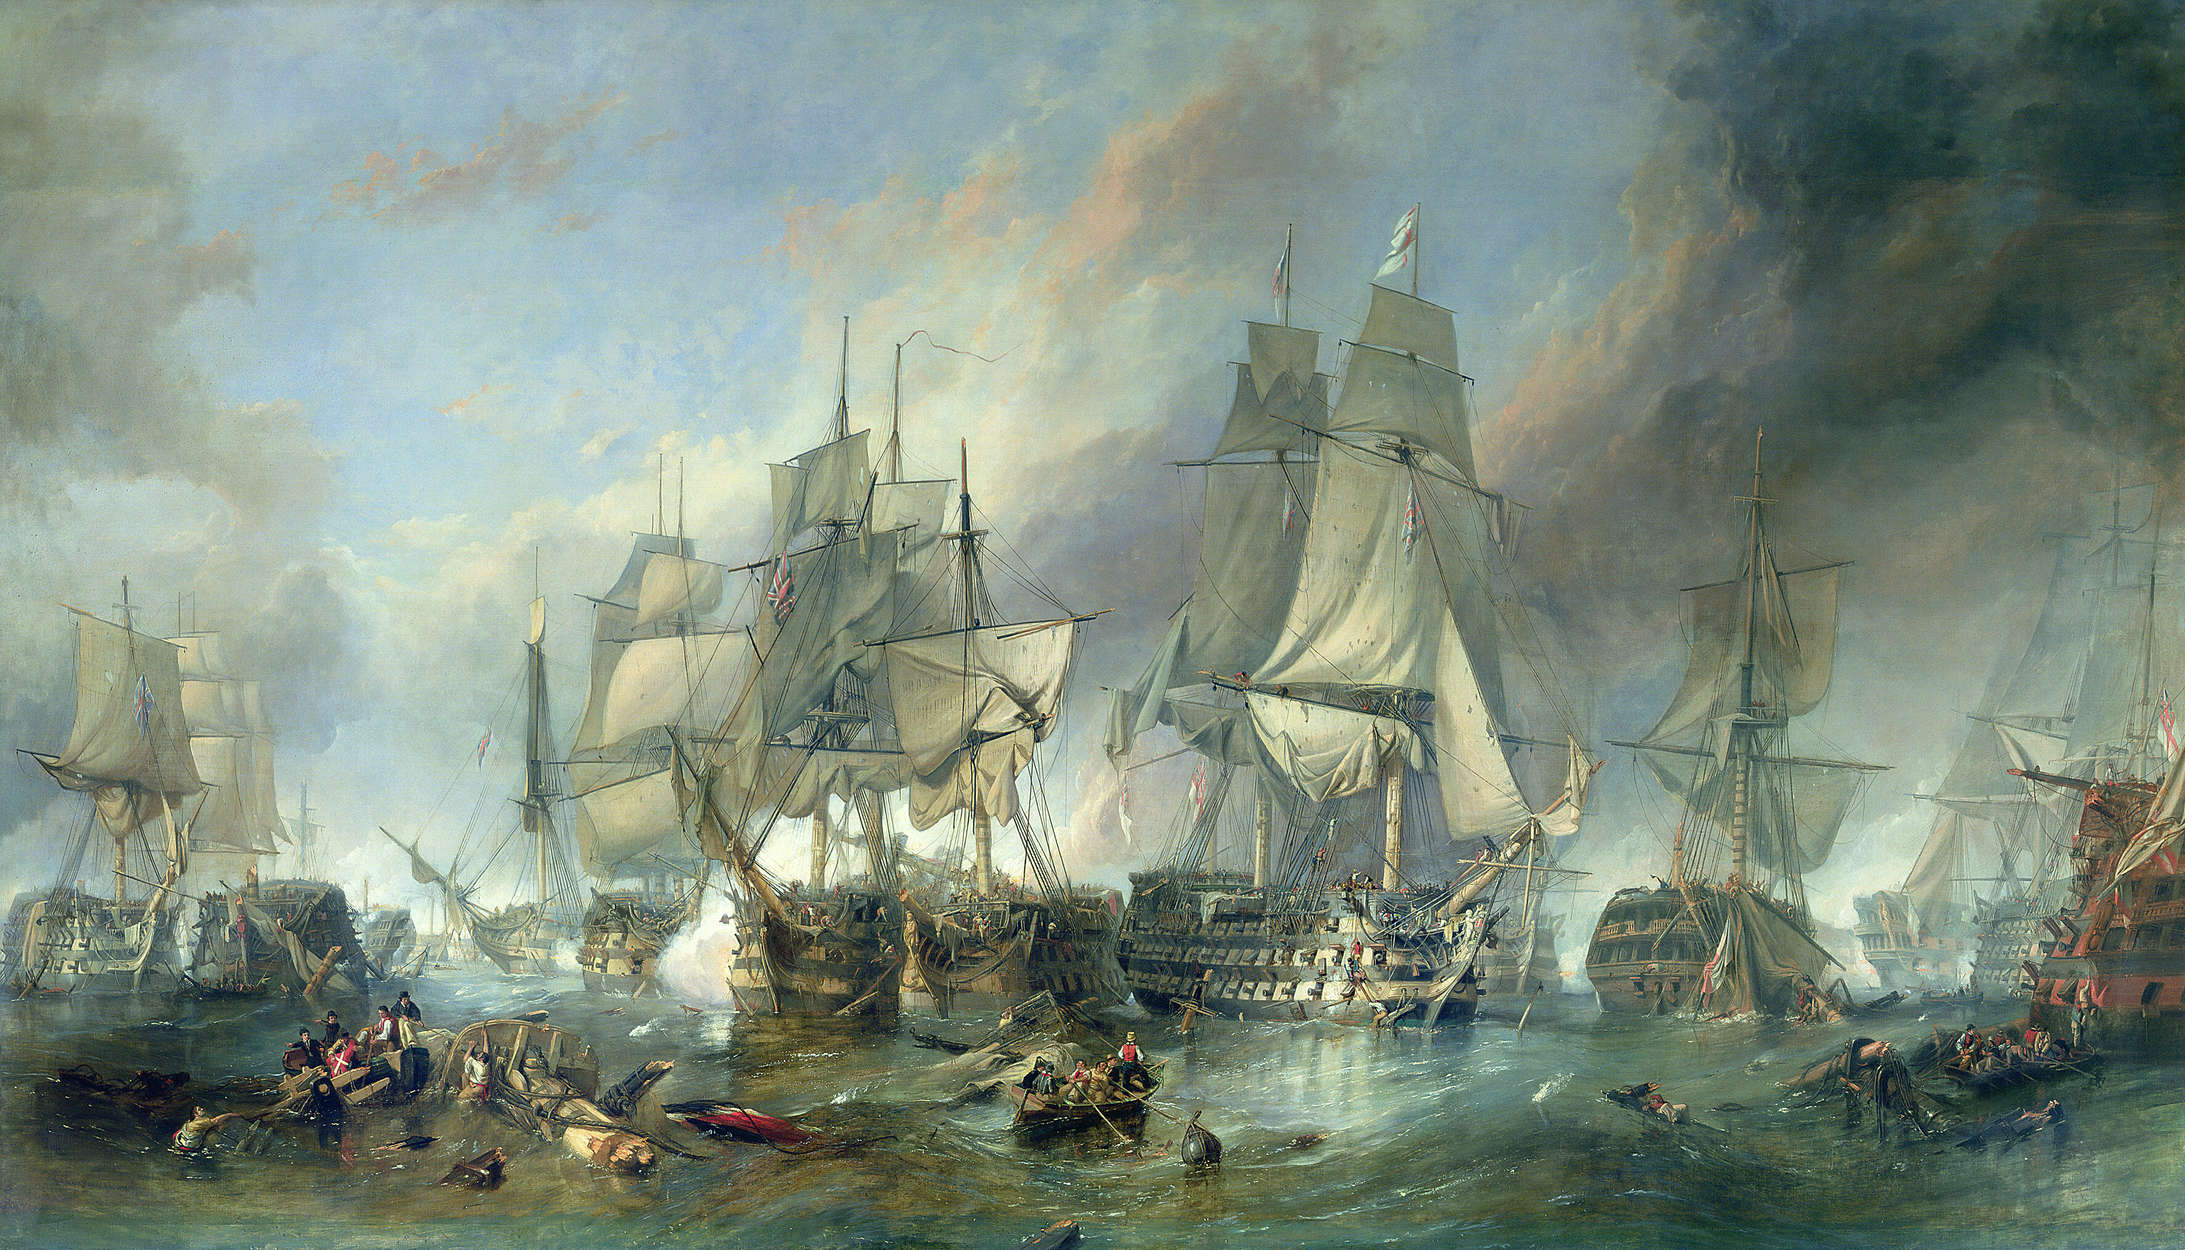             Photo wallpaper "The Battle of Trafalgar" by Clarkson Stanfield
        